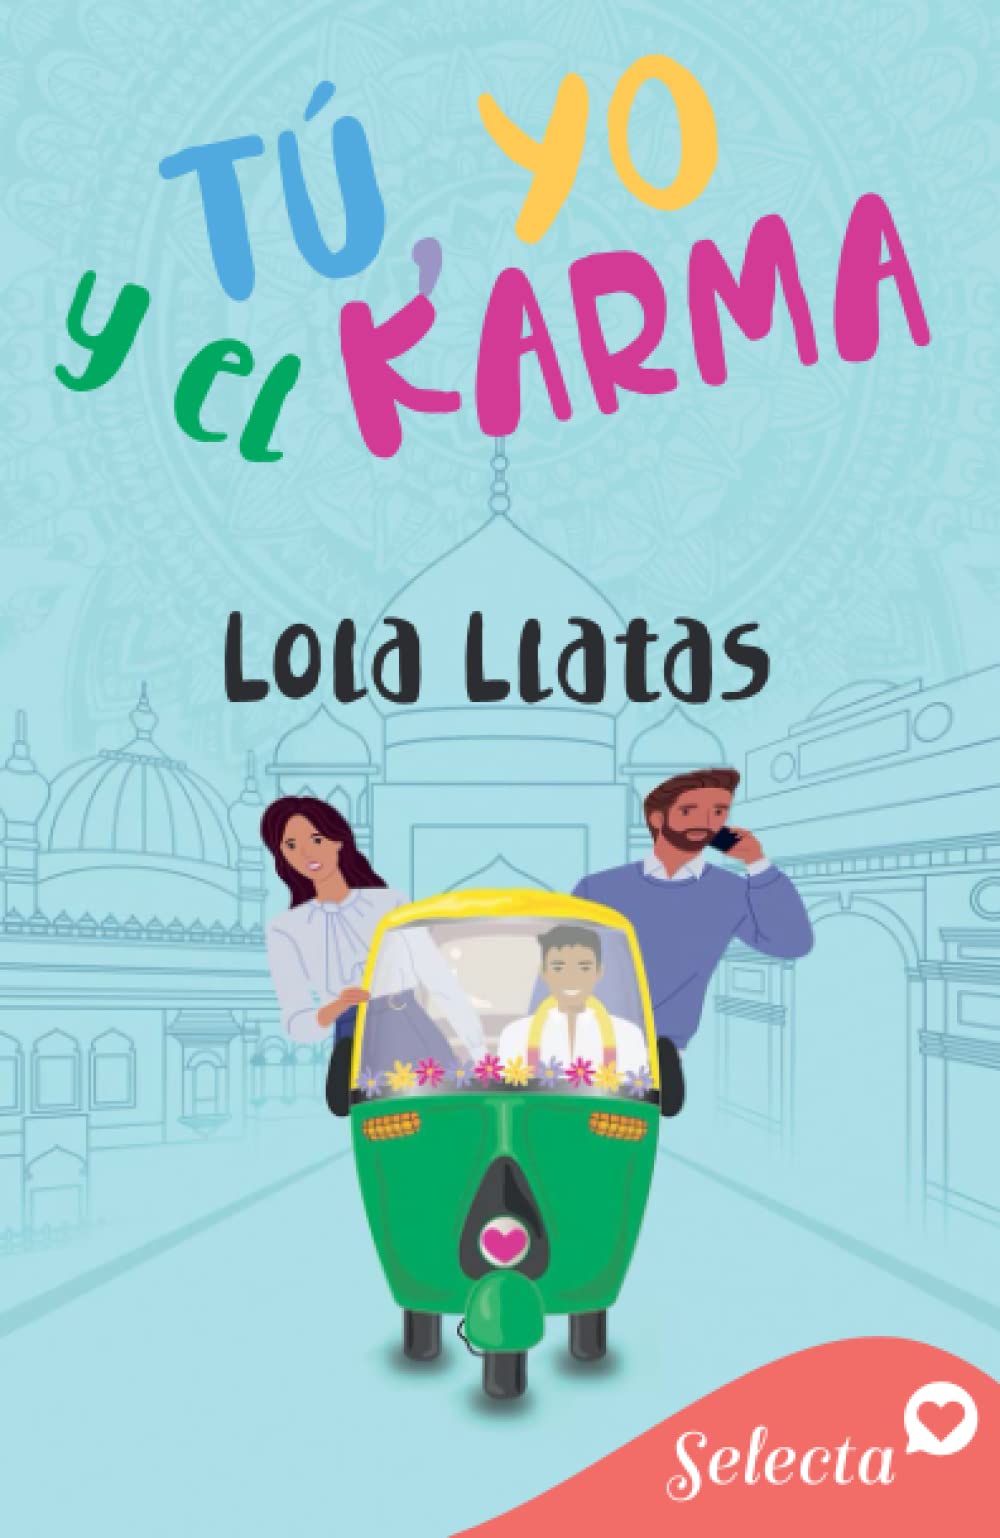 Reseña de la comedia romántica «Tú, yo y el karma», de Lola Llatas